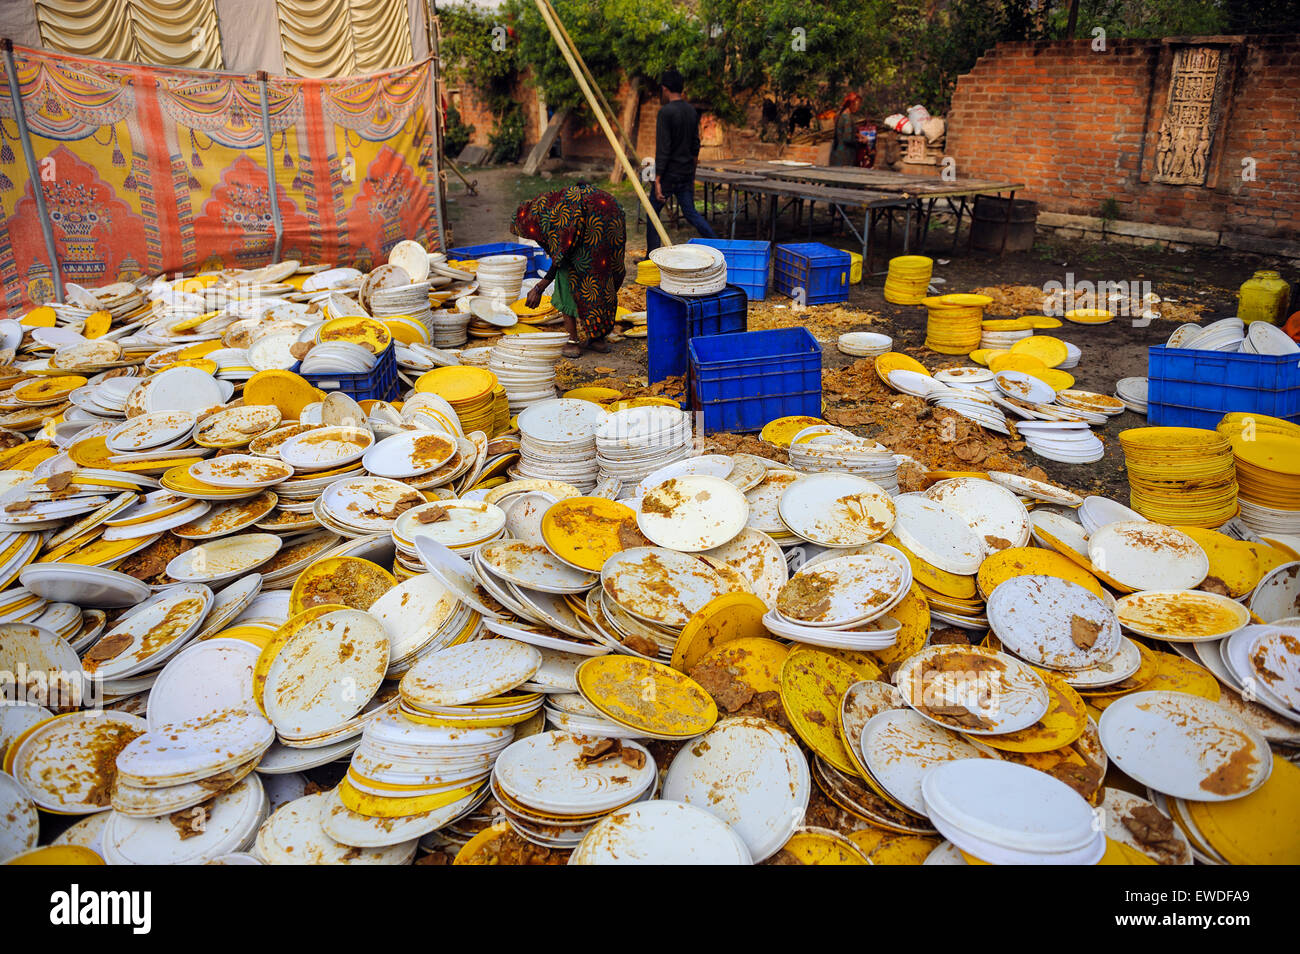 Des piles de vaisselle sale lors d'un festival à l'Uttar Pradesh, Inde. Banque D'Images